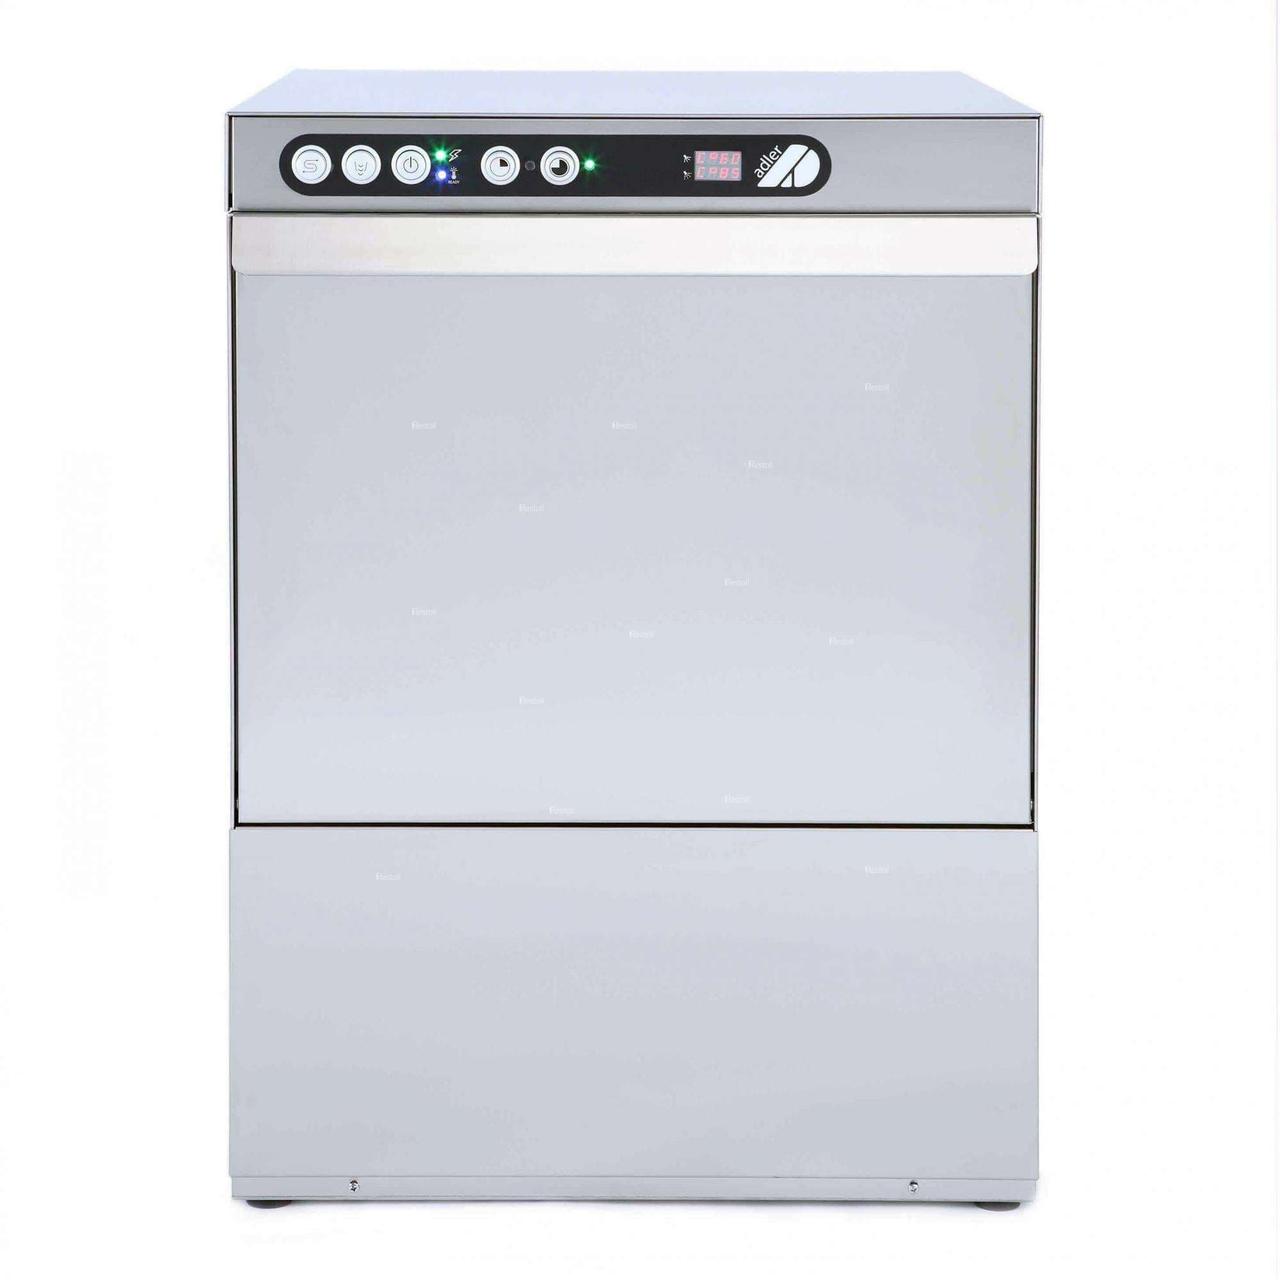 Фронтальная посудомоечная машина Adler ECO 50 DPPD, 220В (помпа,дозатор)